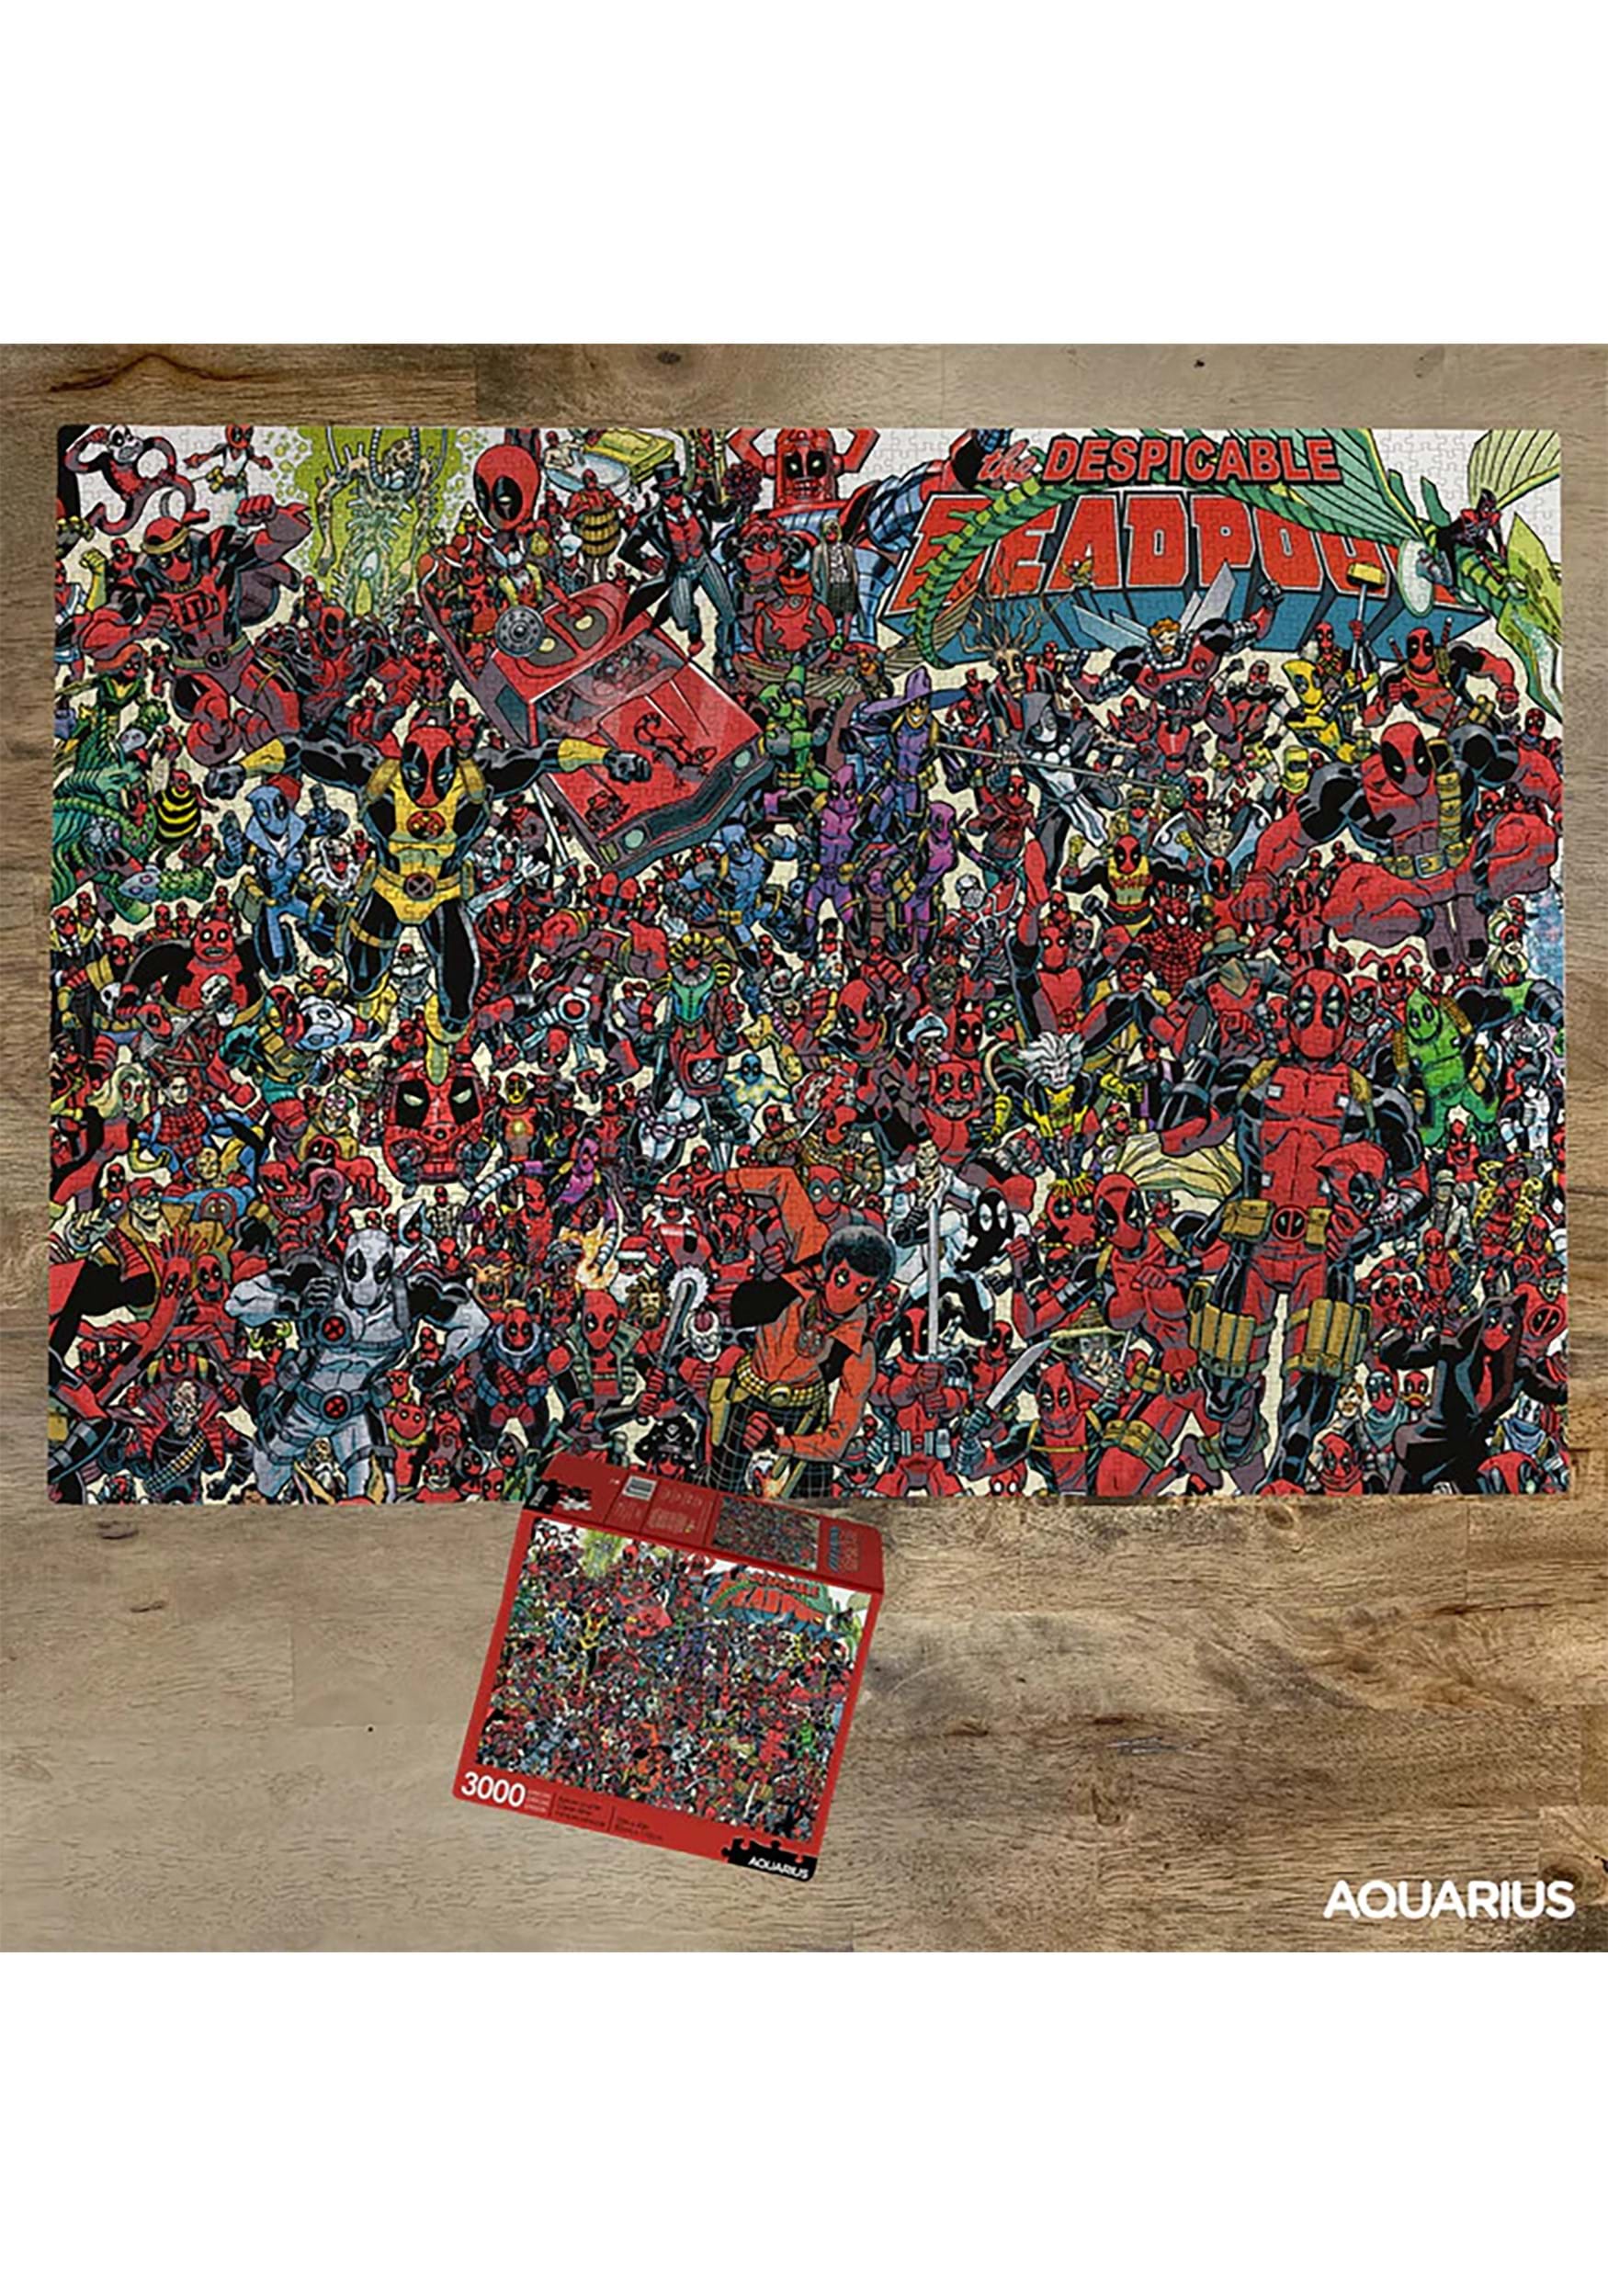 Marvel Deadpool 3000 Piece Jigsaw Puzzle